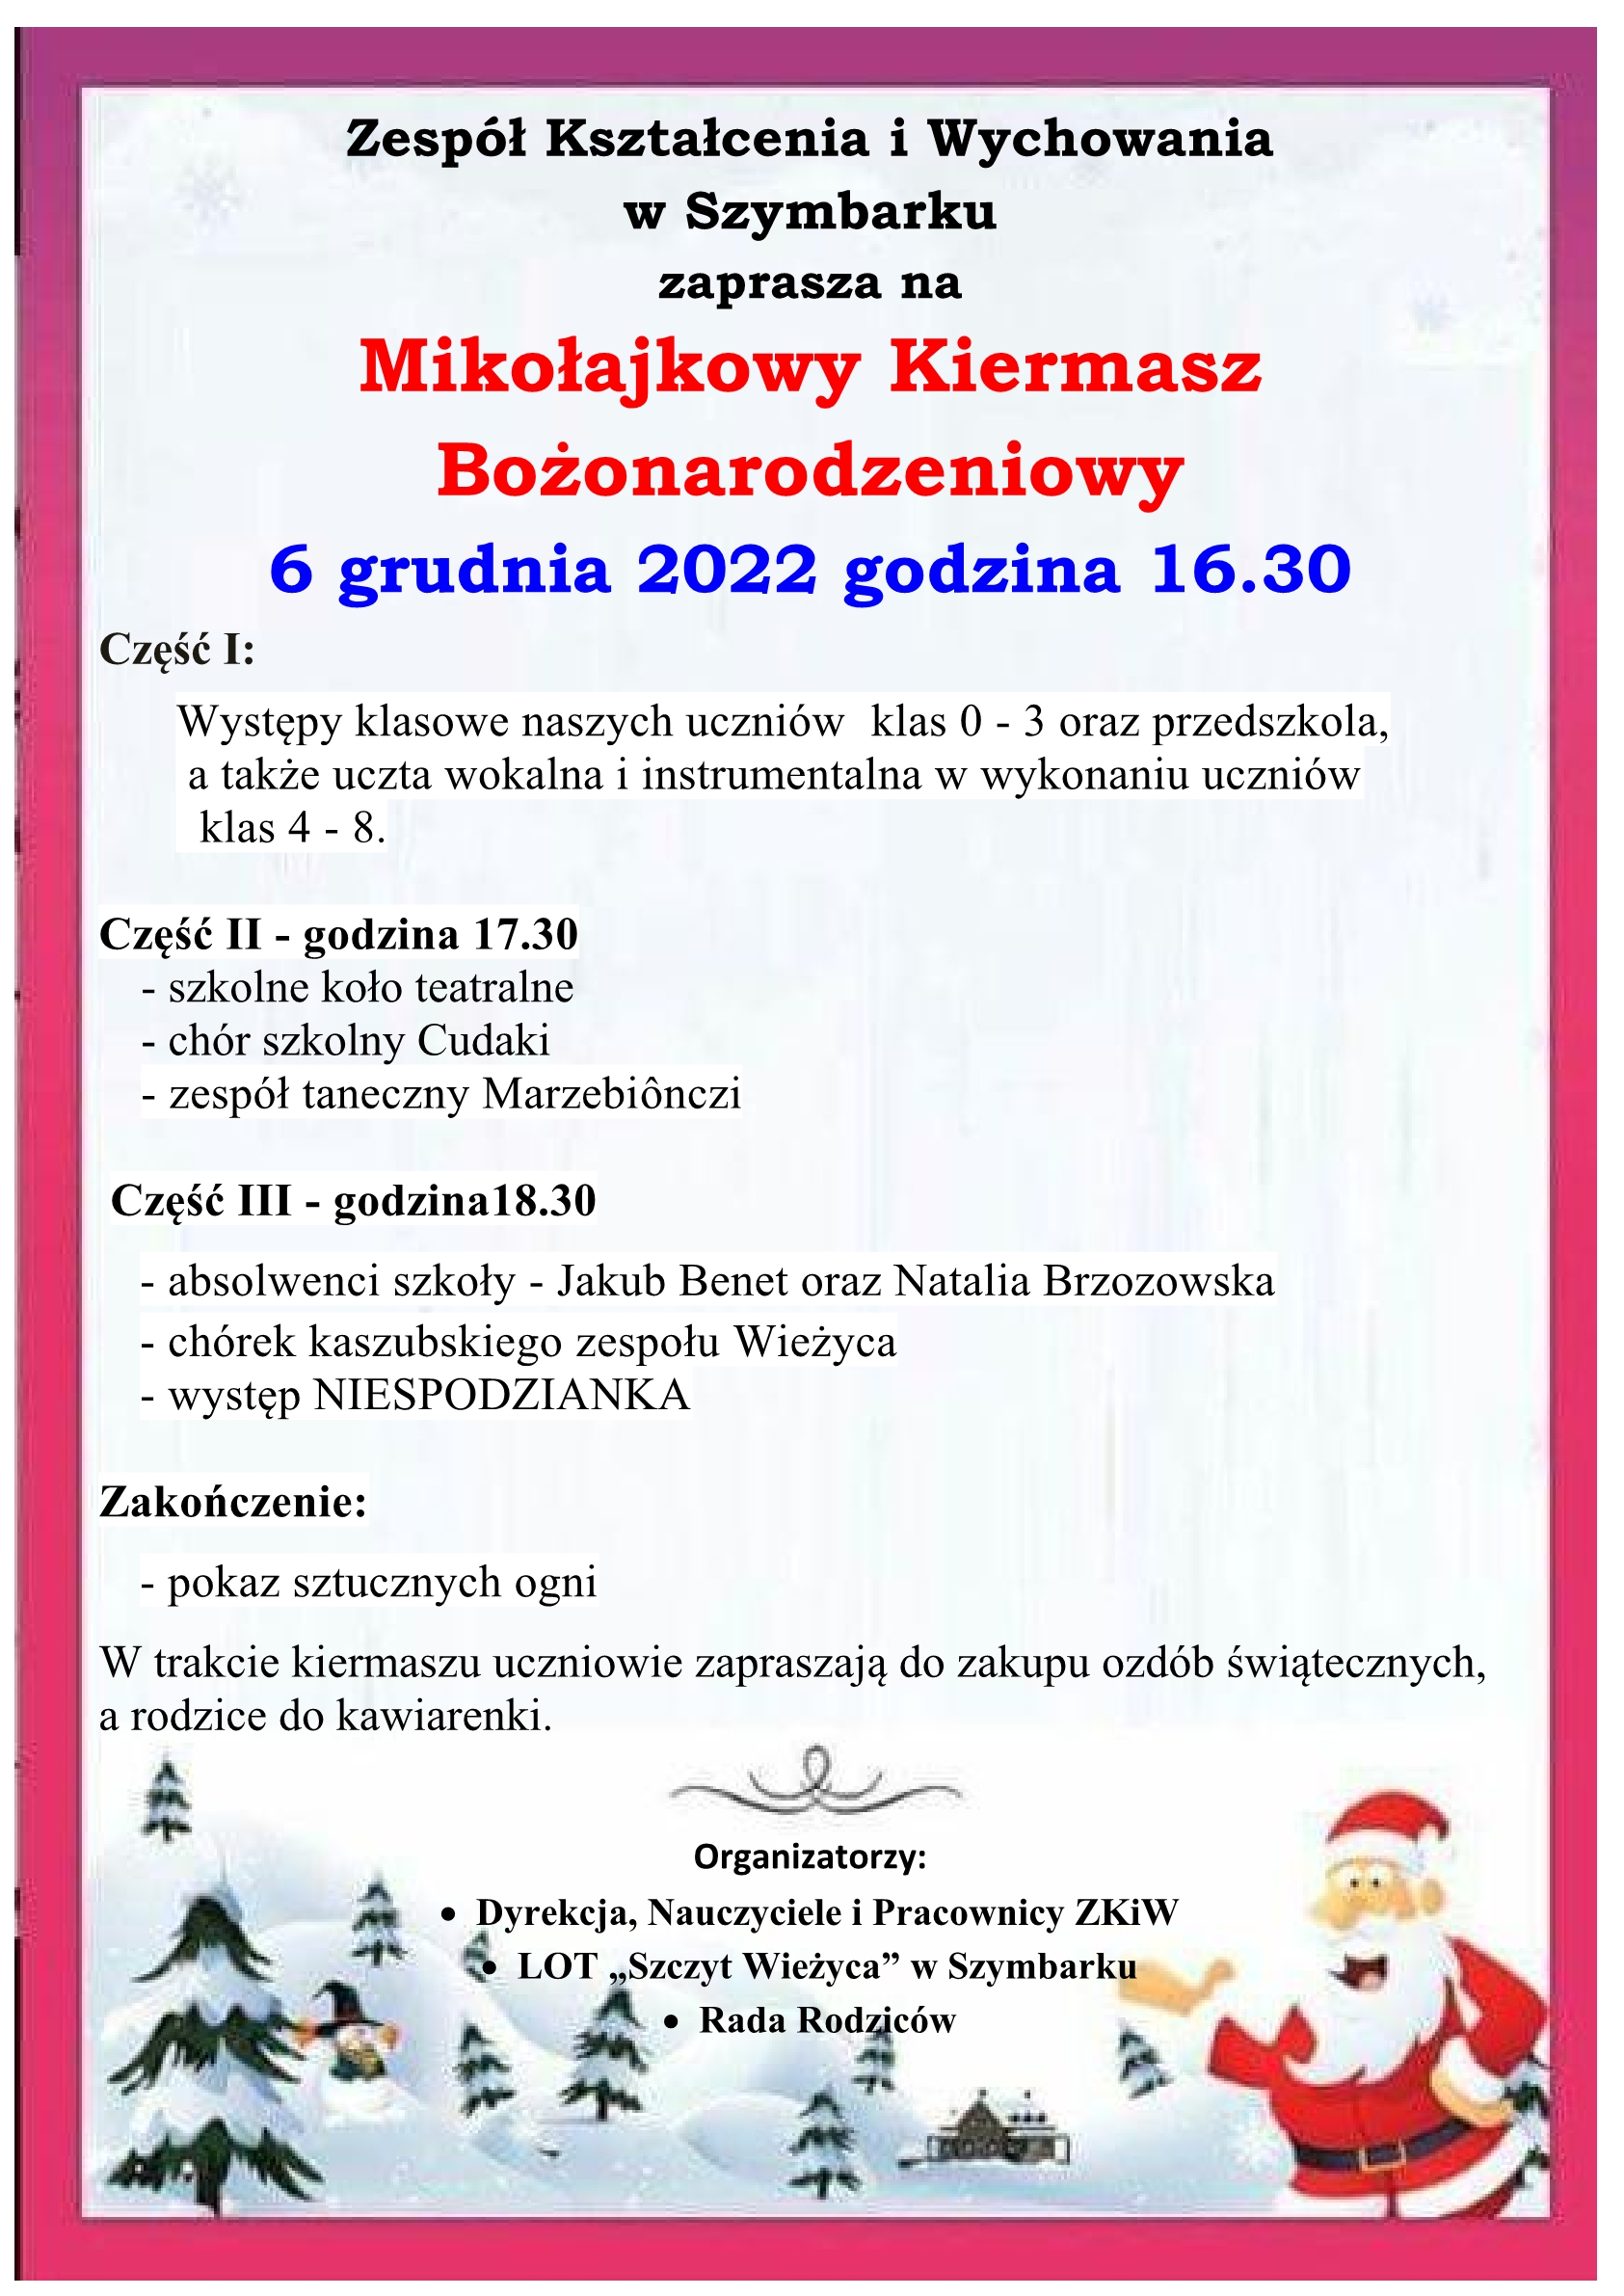 Zespół Kształcenia i Wychowania w Szymbarku zaprasza na Mikołajkowy Kiermasz Bożonarodzeniowy 6 grudnia 2022 godz. 16:30